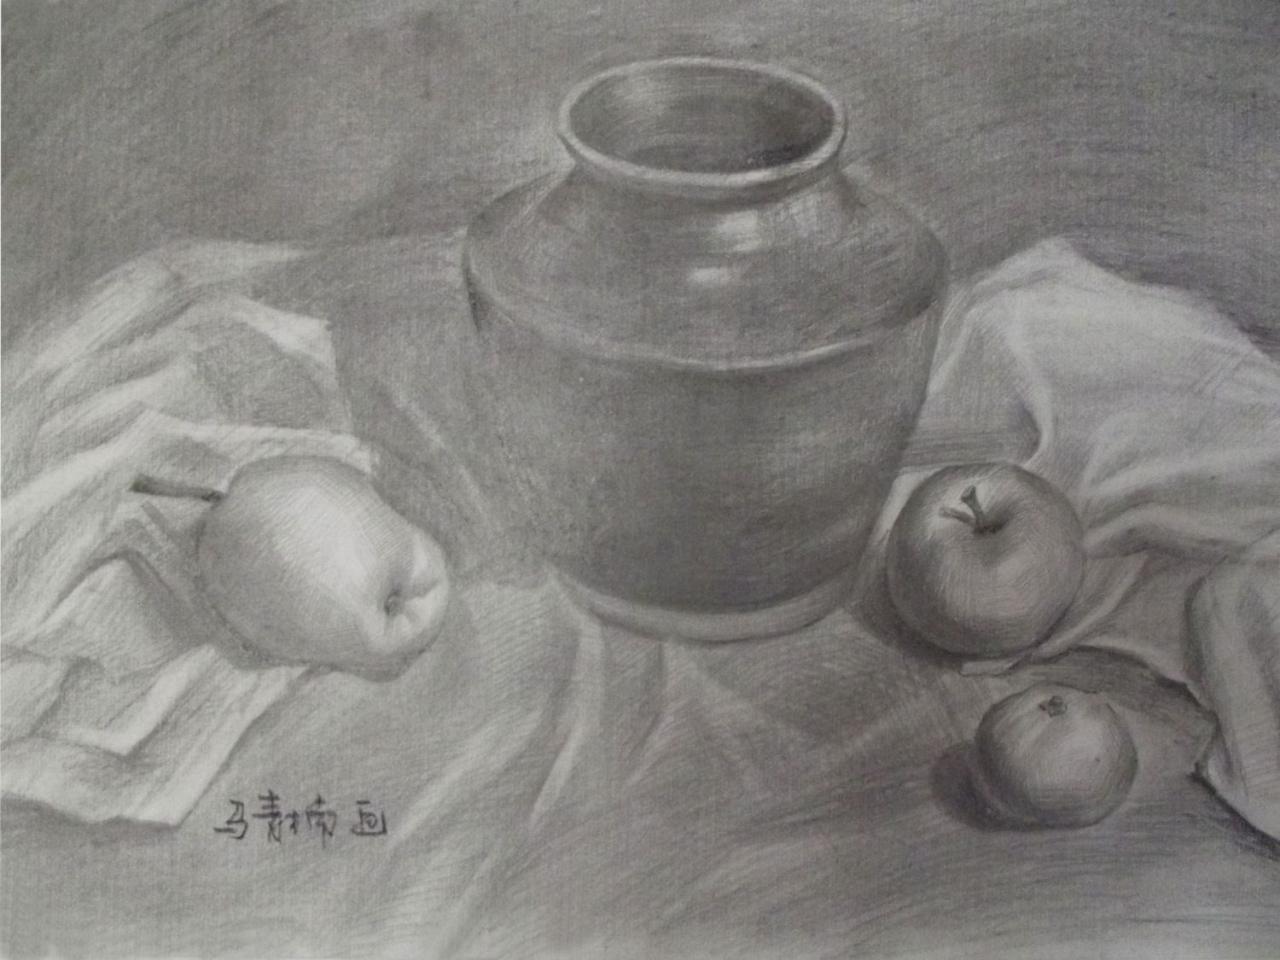 陶罐、苹果、梨 静物素描 马青楠画